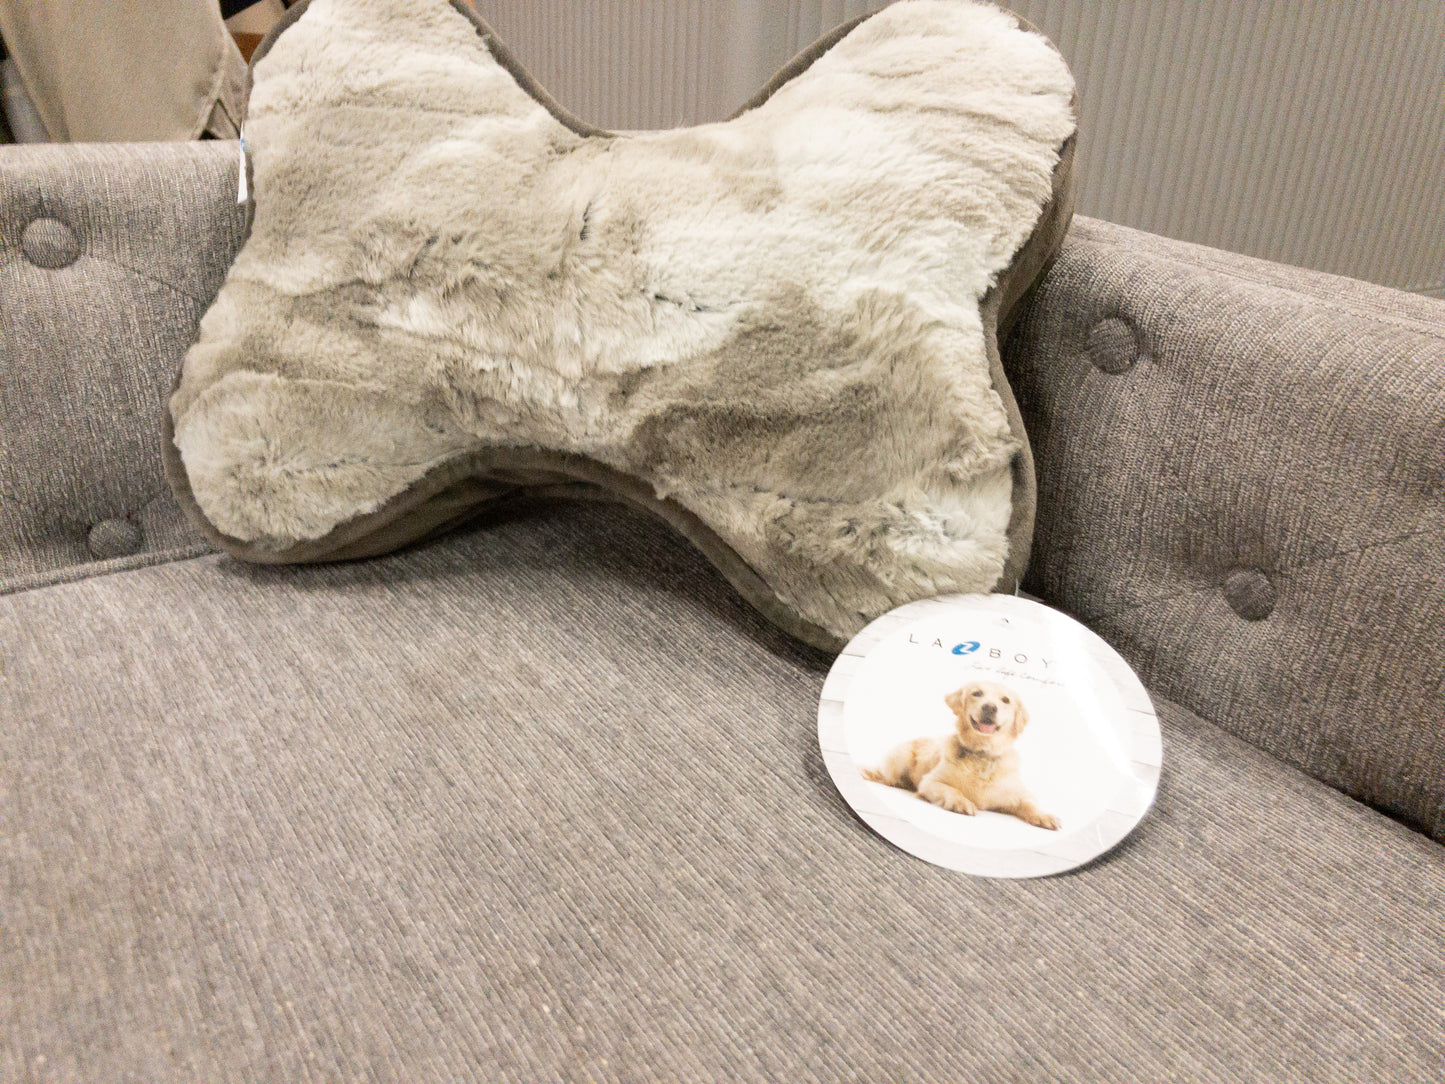 NEW - Costco - La-Z-Boy Franklin Dog Sofa with Pillow - Retail $249